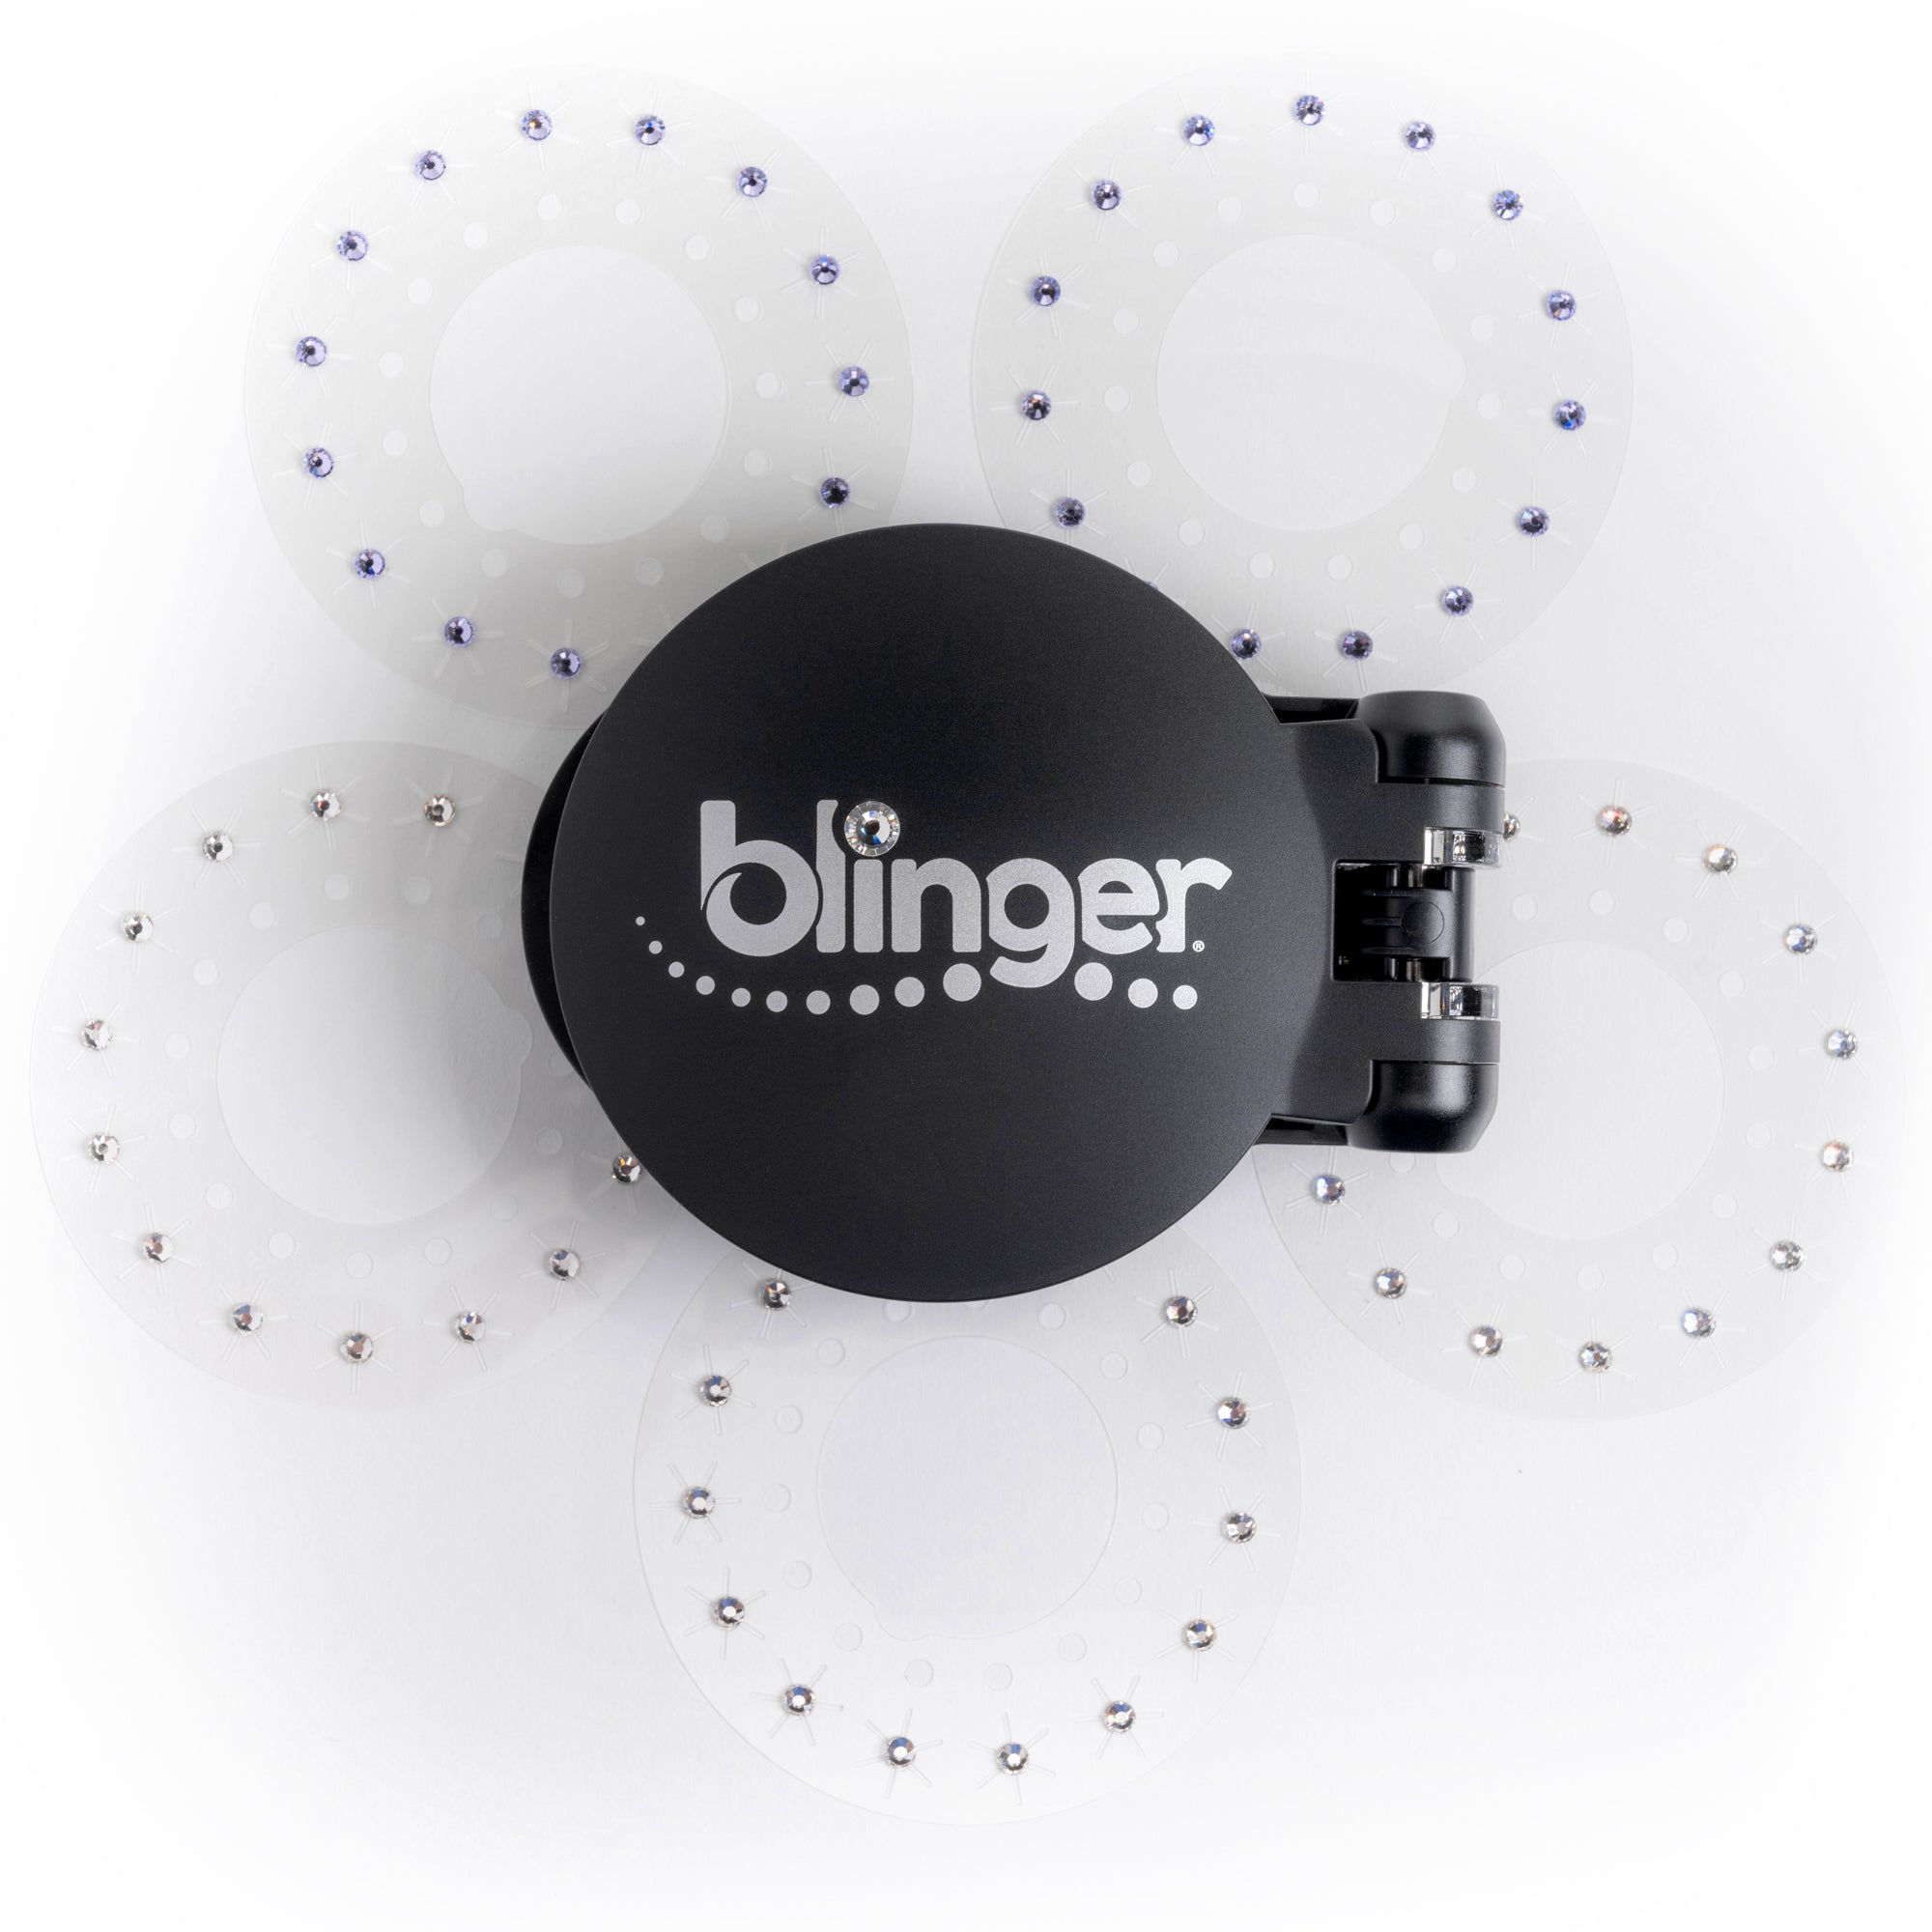 blinger® Starter Kit with blinger® Styling Tool + 75 Crystals